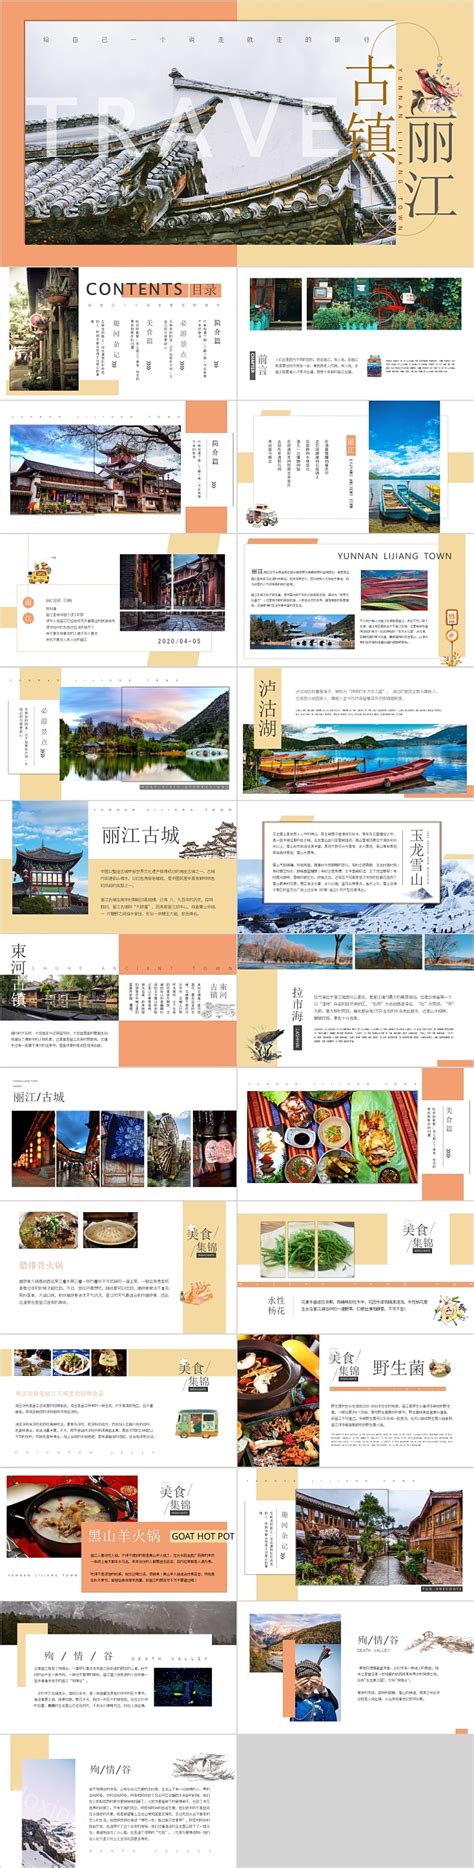 丽江印象旅游海报模板图片下载_红动中国